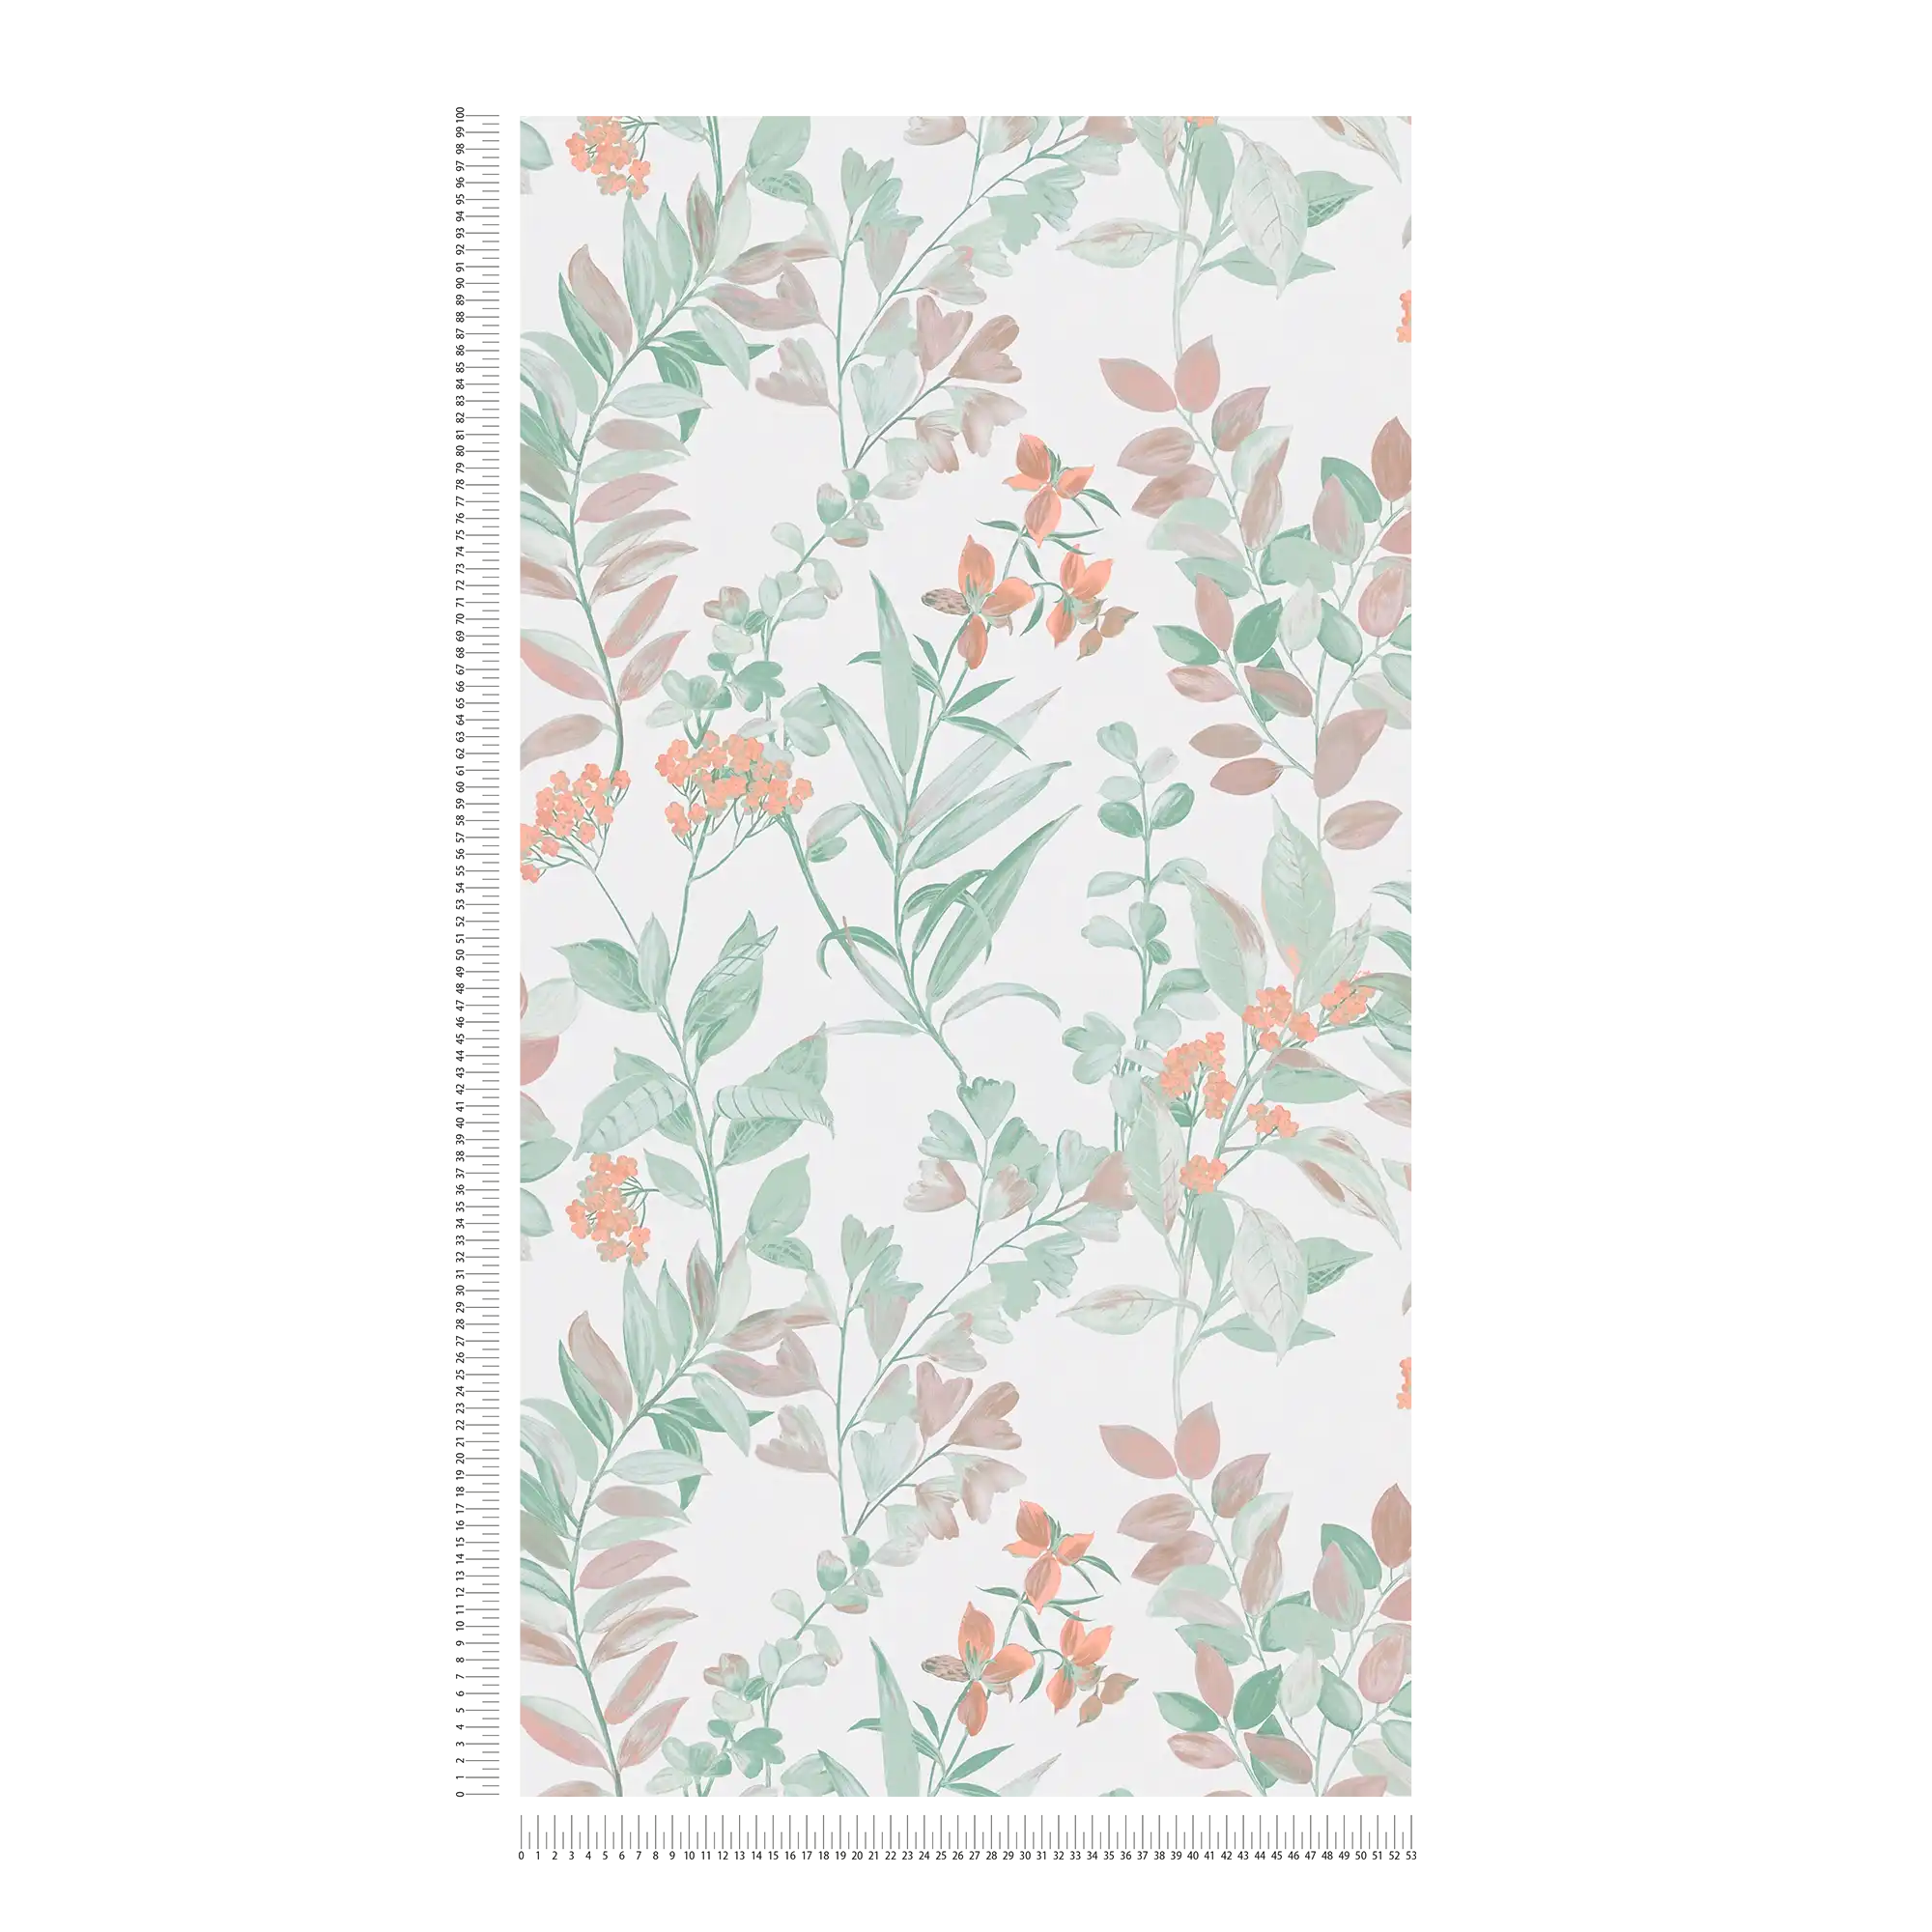             Carta da parati in tessuto non tessuto con motivi floreali - multicolore, verde, bianco
        